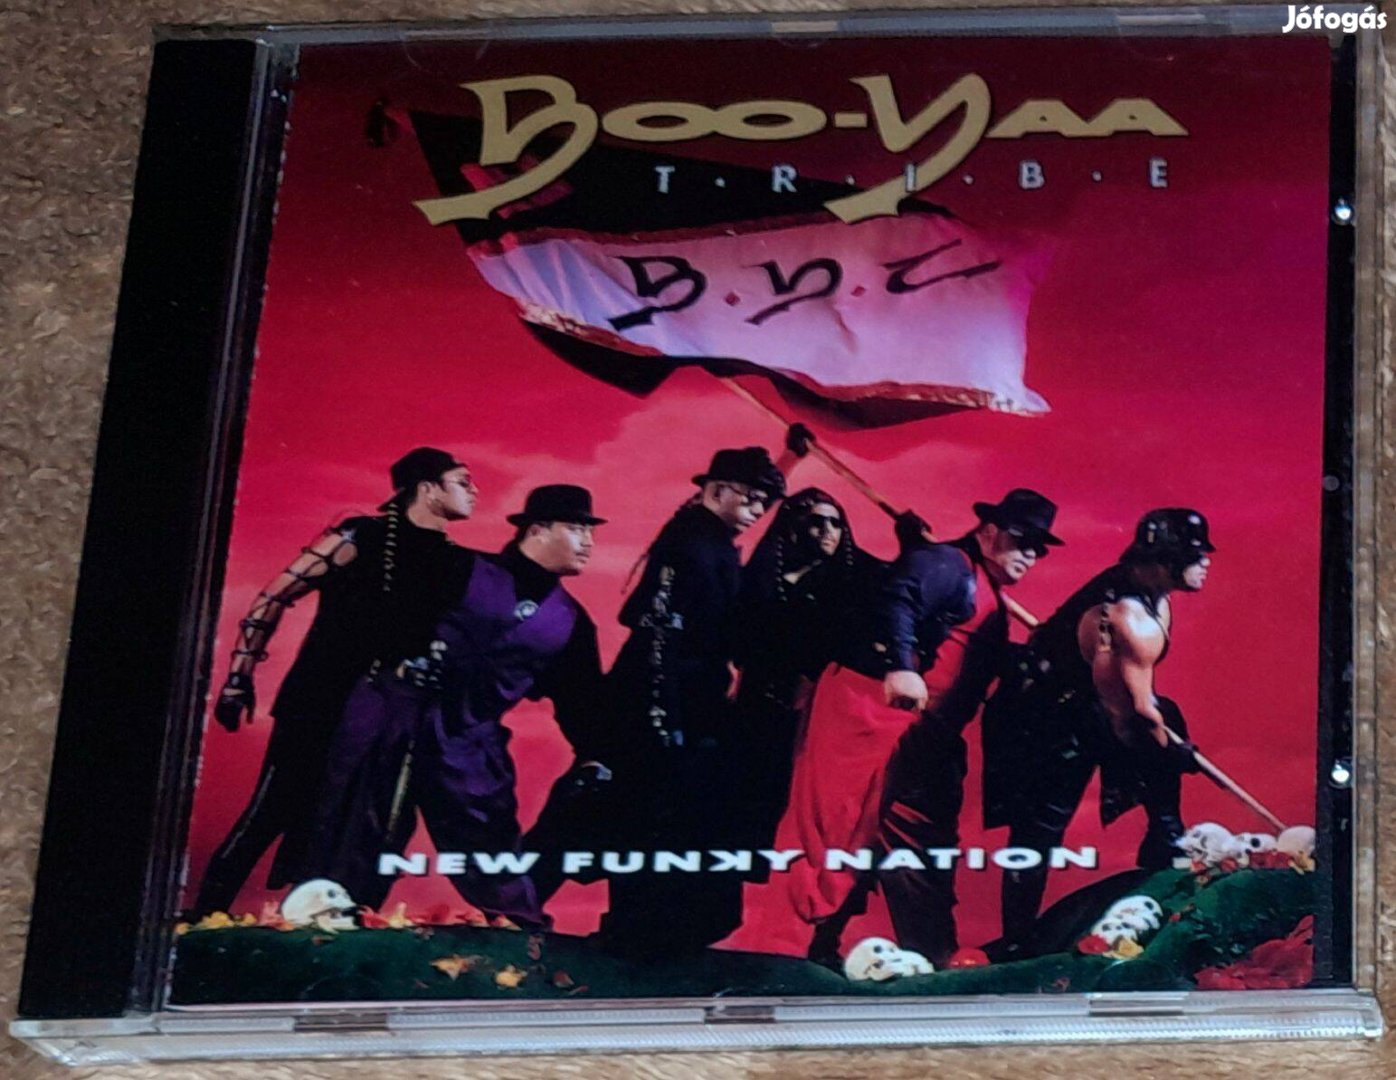 Boo-Yaa T.R.I.B.E. - New Funky Nation CD